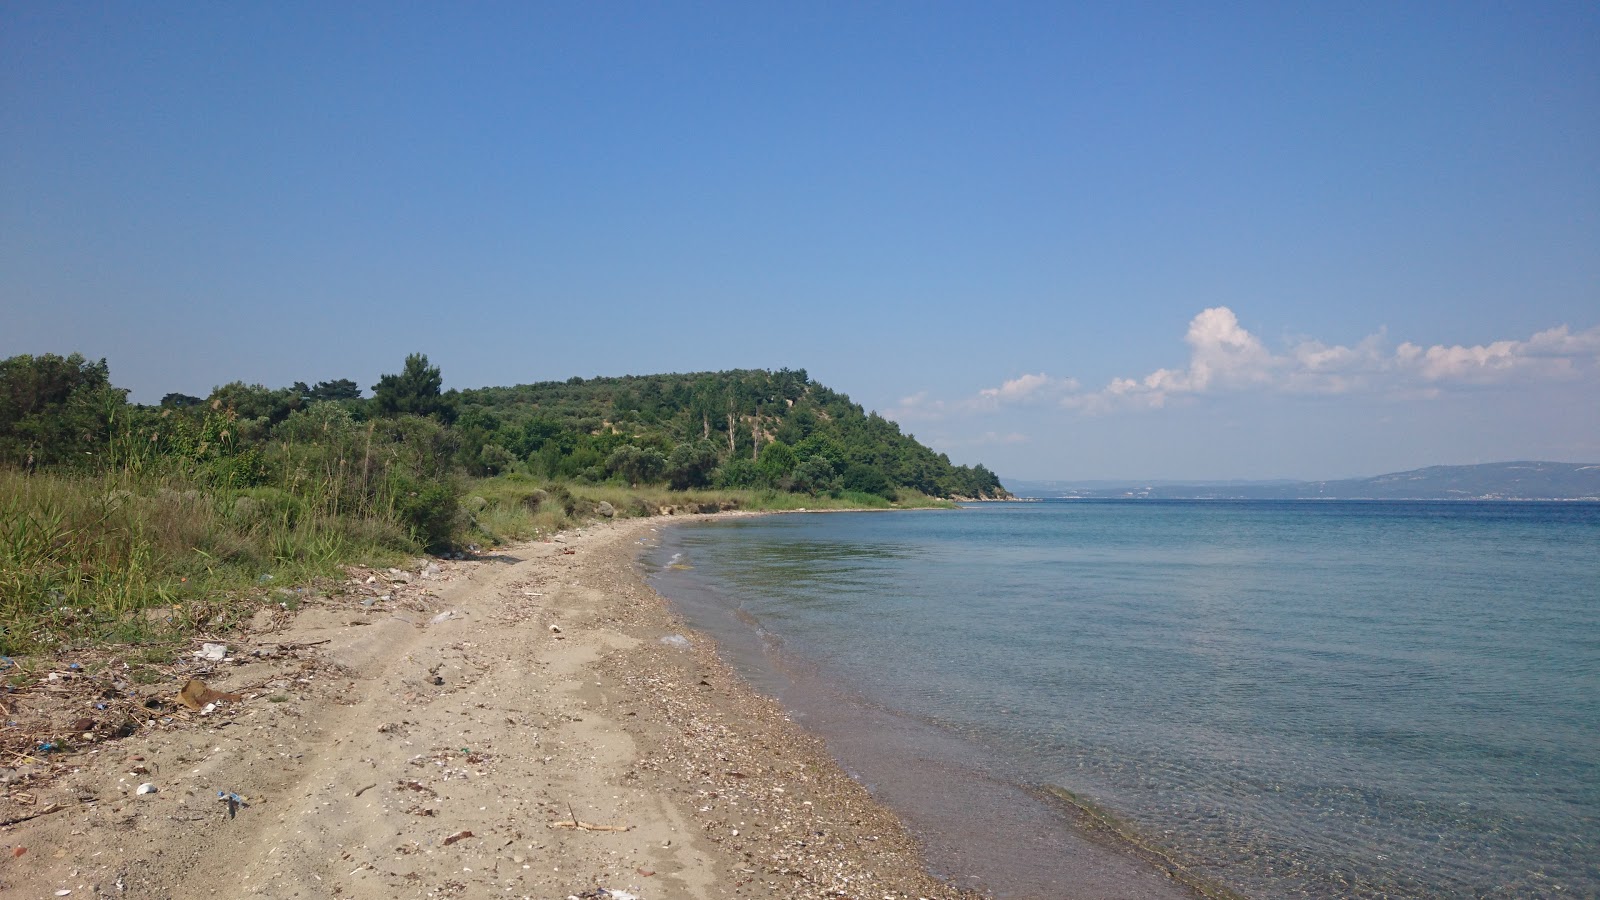 Fotografie cu Alcitepe beach II cu o suprafață de apa pură turcoaz